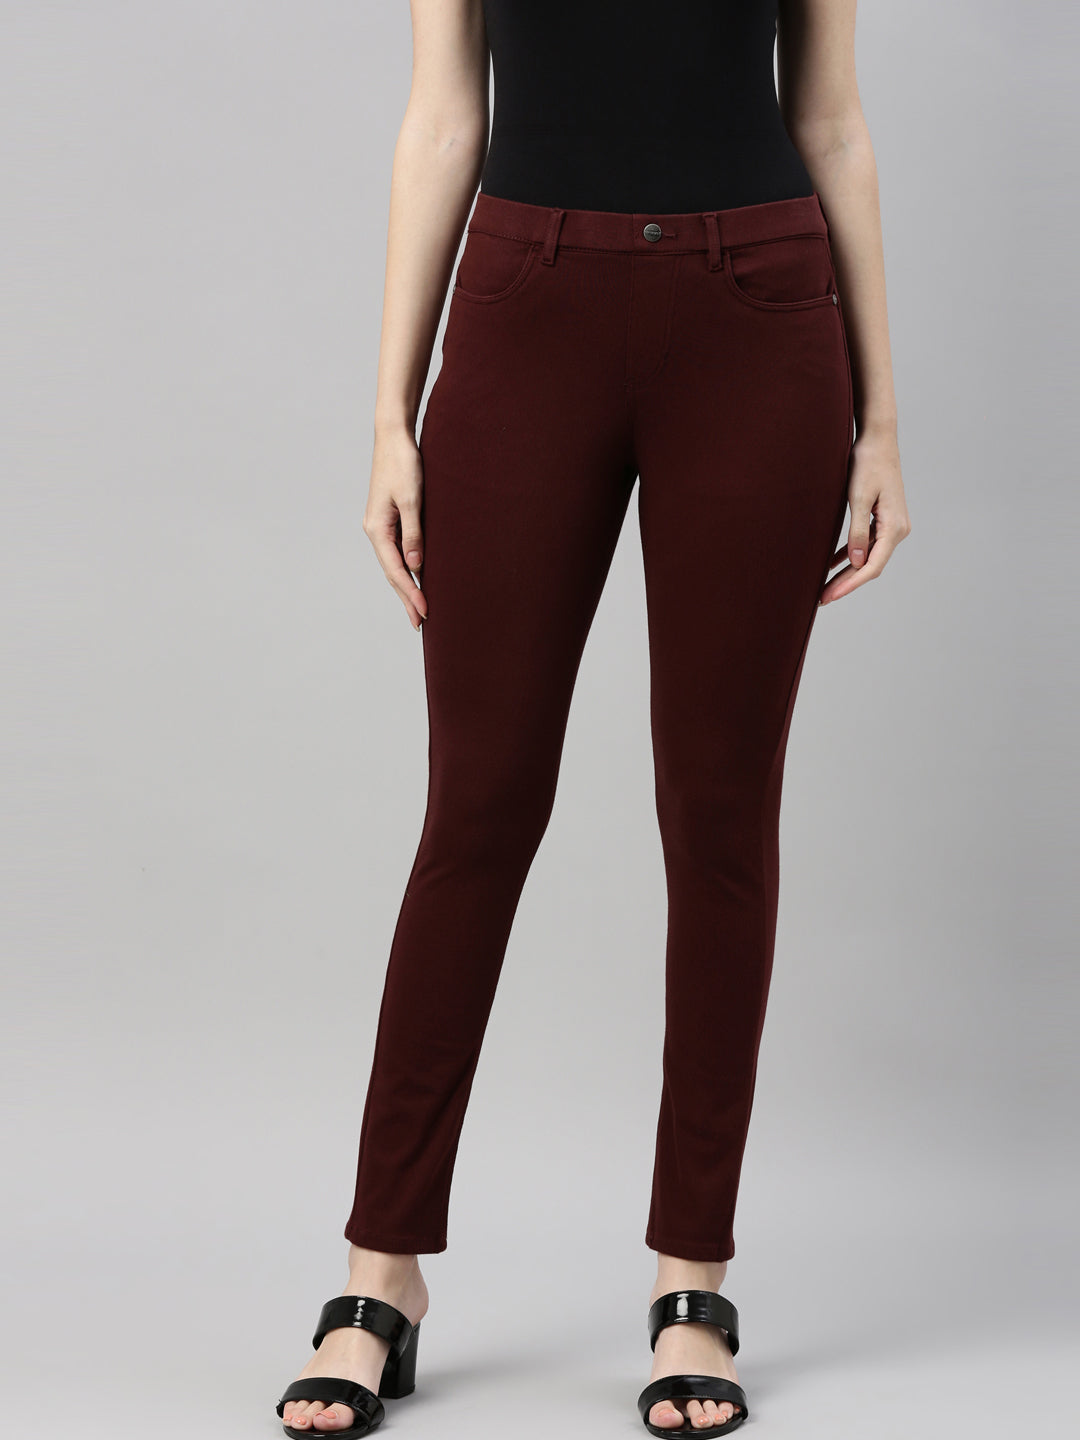 Buy Go Colors Women Solid Dark Maroon Slim Fit Ankle Length Leggings - Tall  Online